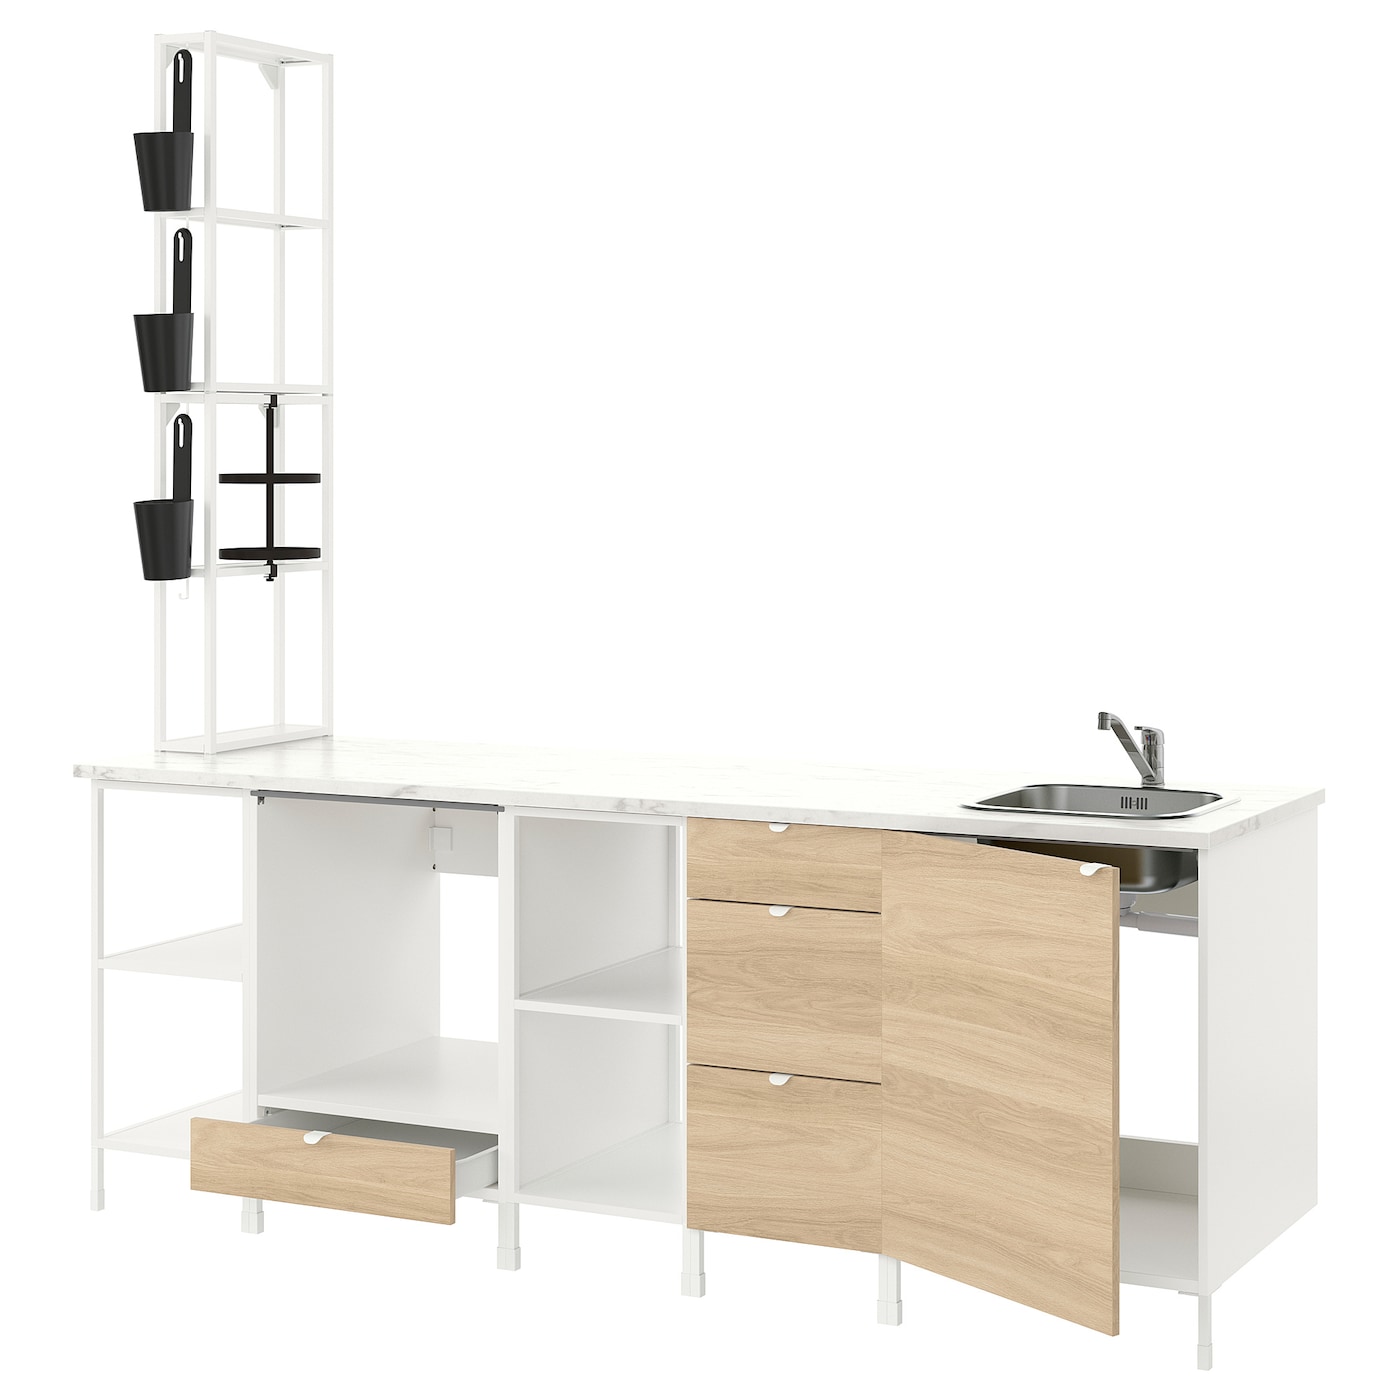 Кухонная комбинация для хранения вещей - ENHET  IKEA/ ЭНХЕТ ИКЕА, 243х63х241 см, белый/бежевый